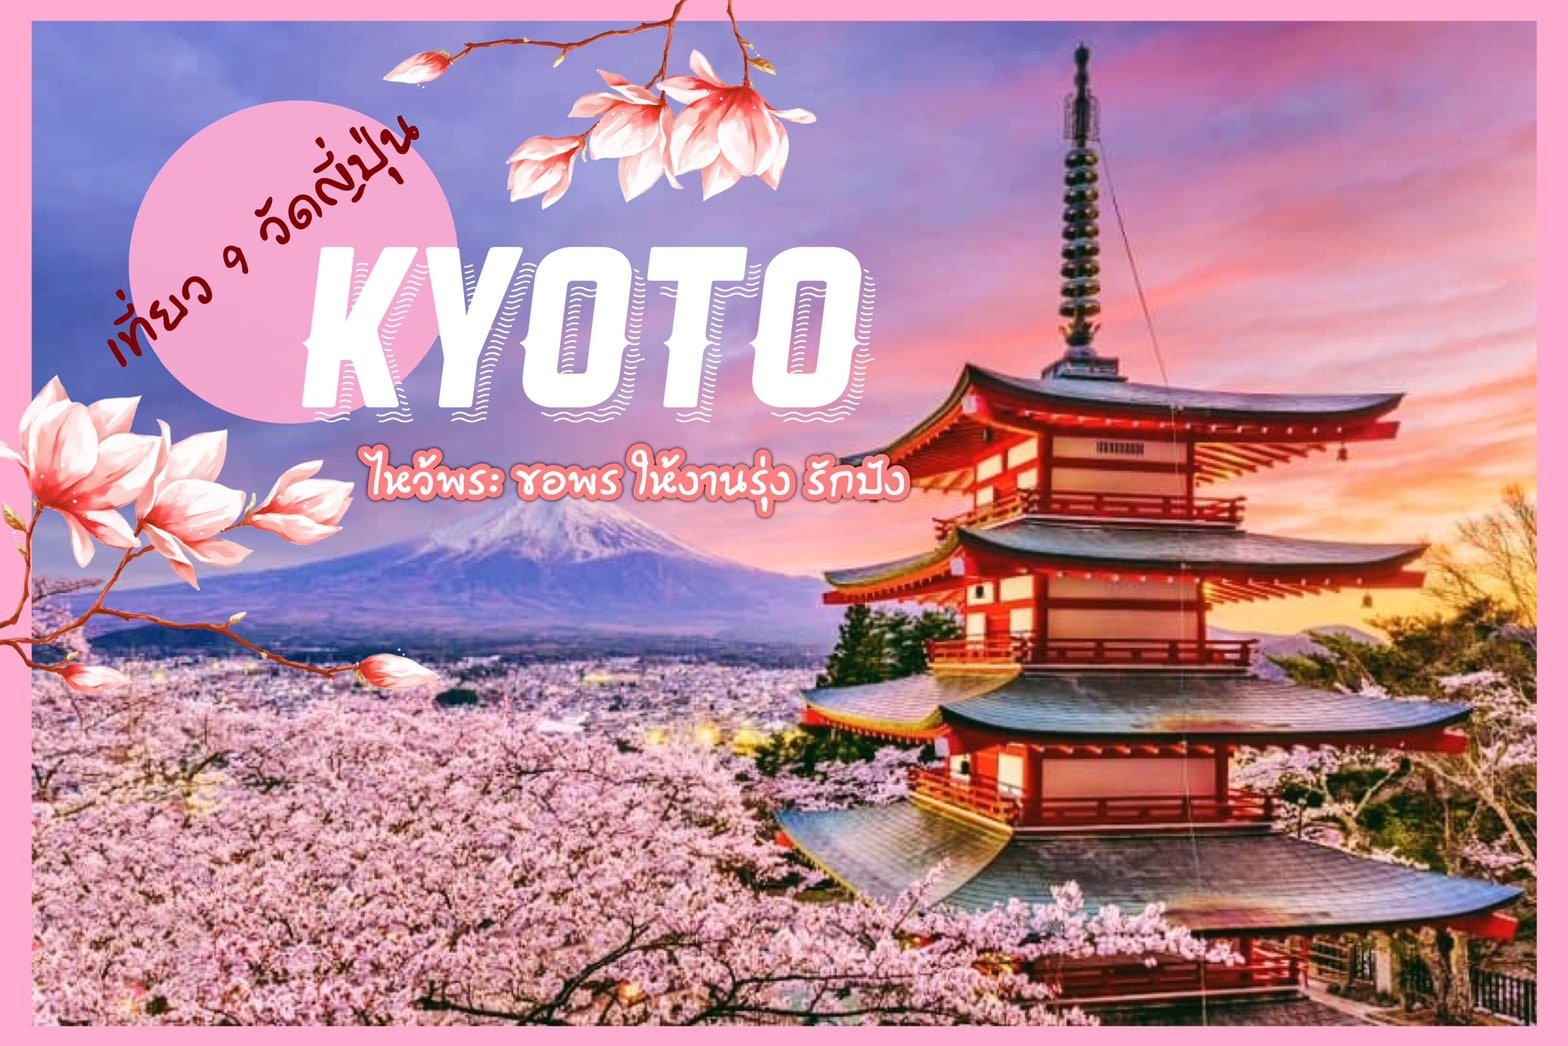 ทัวร์ญี่ปุ่น – เที่ยว 9 วัดในญี่ปุ่น ไหว้พระ ขอพร  ให้งานรุ่ง ความรักปัง